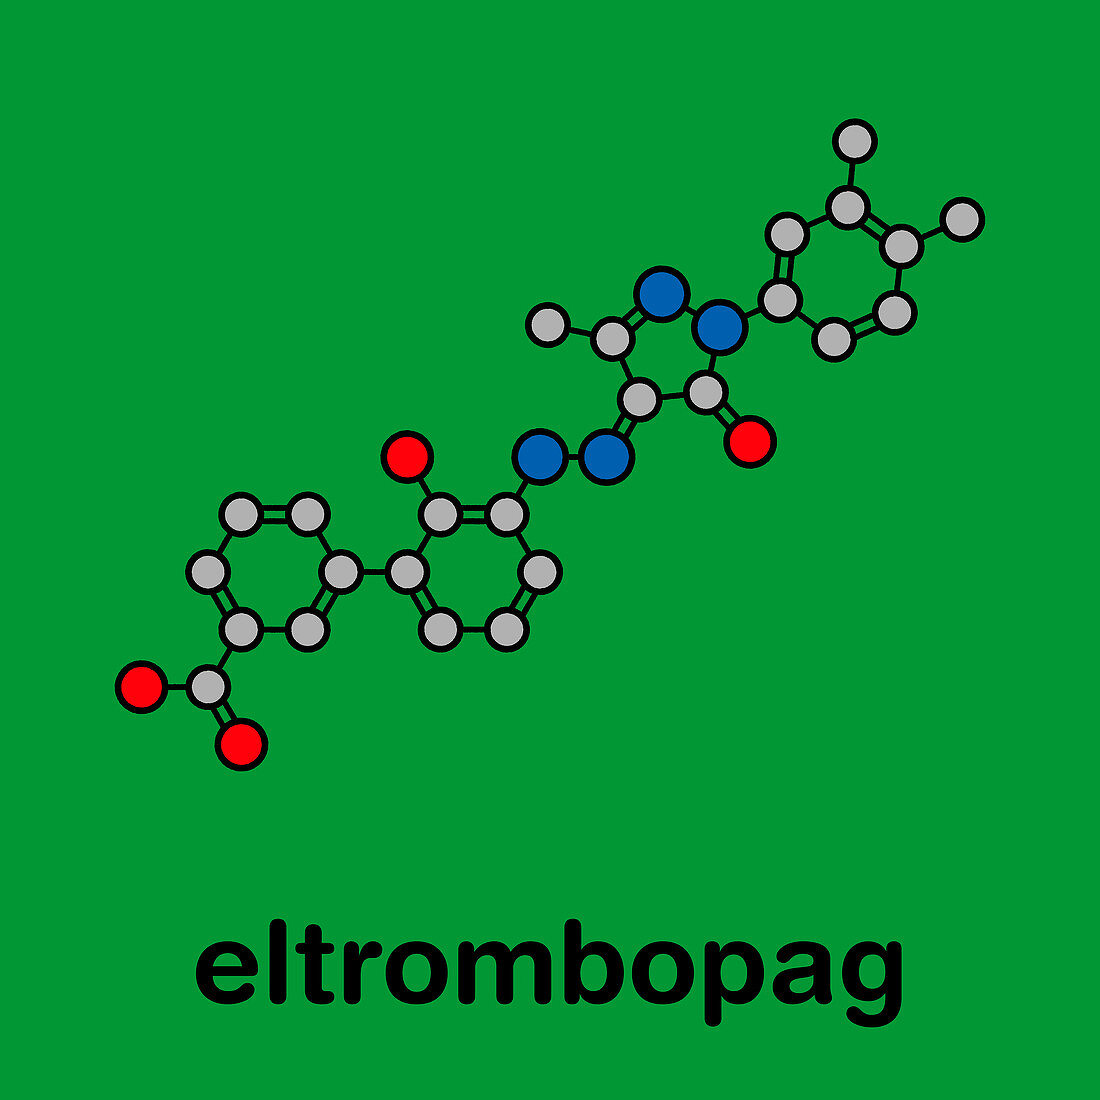 Eltrombopag thrombocytopenia drug, molecular model